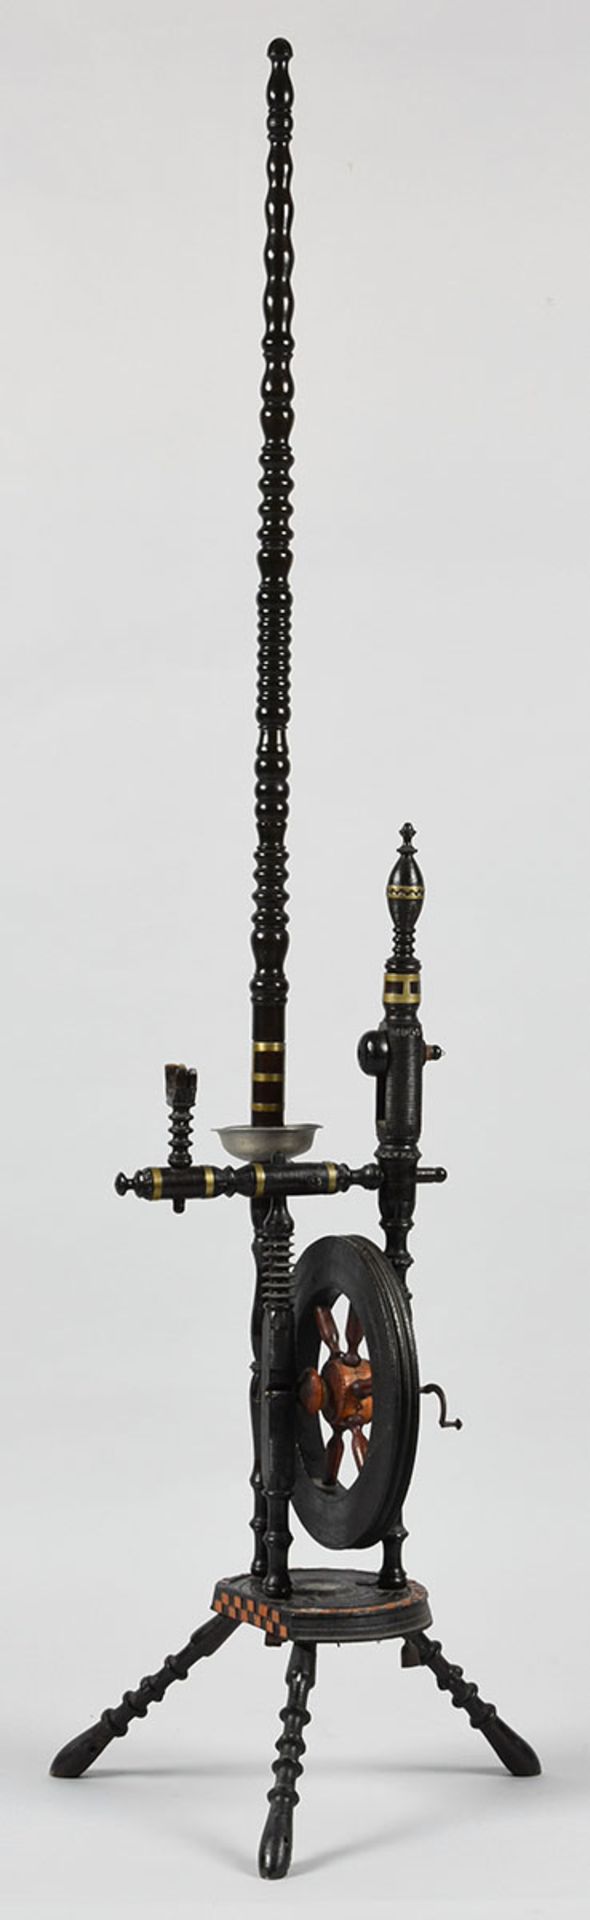 Spinnrad Holz, gedrechseltes Gestell, schwarz lackiert, dekorative Ausführung mit Messingzierbändern - Bild 2 aus 2